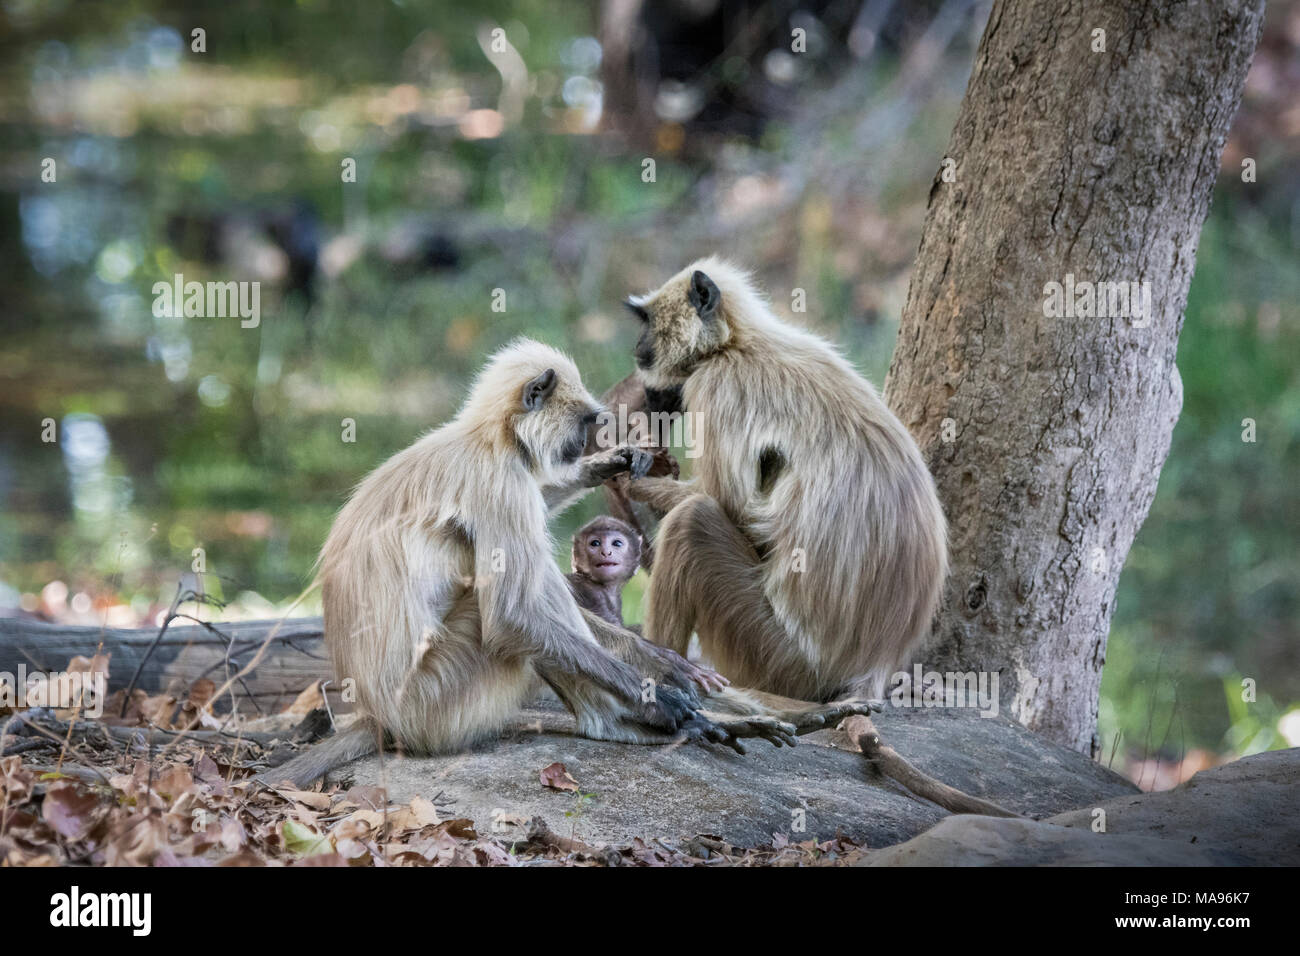 Famille de langurs gris sauvages ou de langurs Hanuman, Semnopithecus, avec un petit bébé à la recherche jusqu'à l'amour, Bandhavgarh National Park, le Madhya Pradesh, Inde Banque D'Images